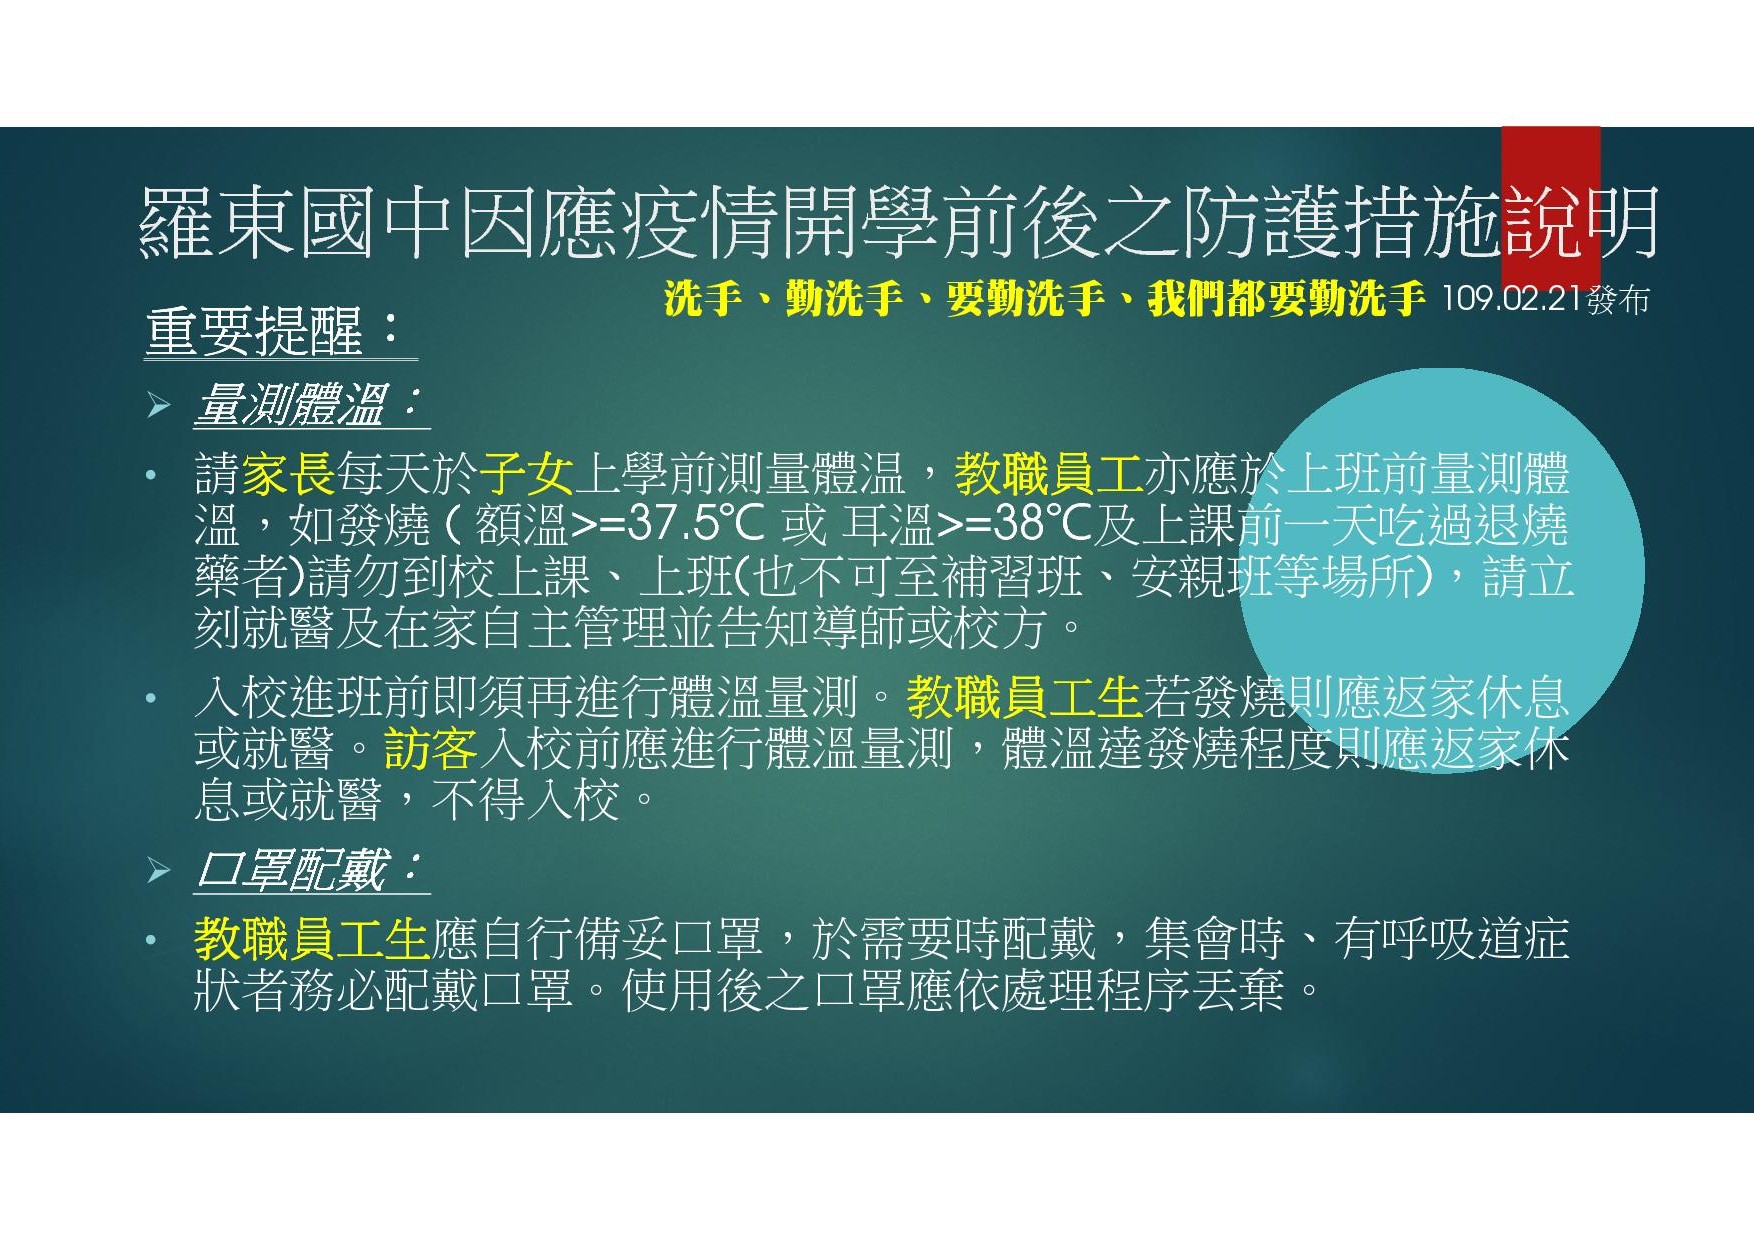 02 羅東國中因應中國大陸新型冠狀病毒肺炎疫情開學前後之防護措施說明1090221-41